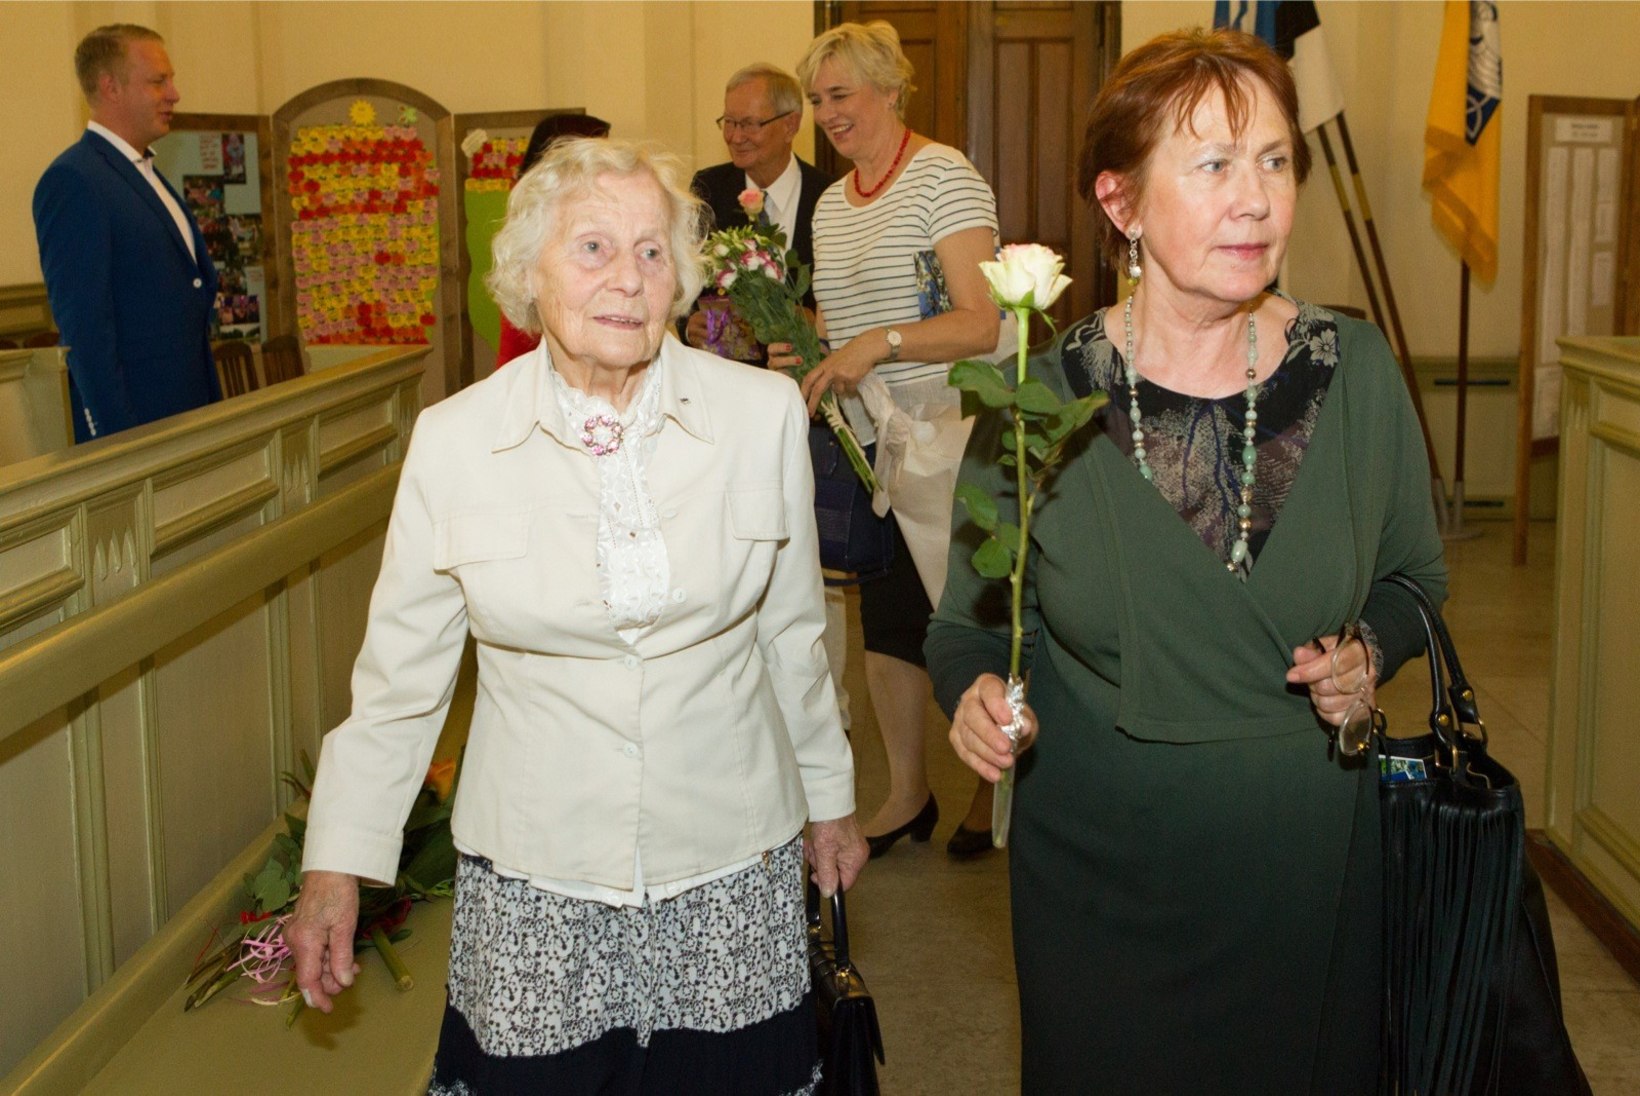 GALERII | Mari-Ann ja Tunne Kelam tähistasid Jaani kirikus oma 150. sünnipäeva